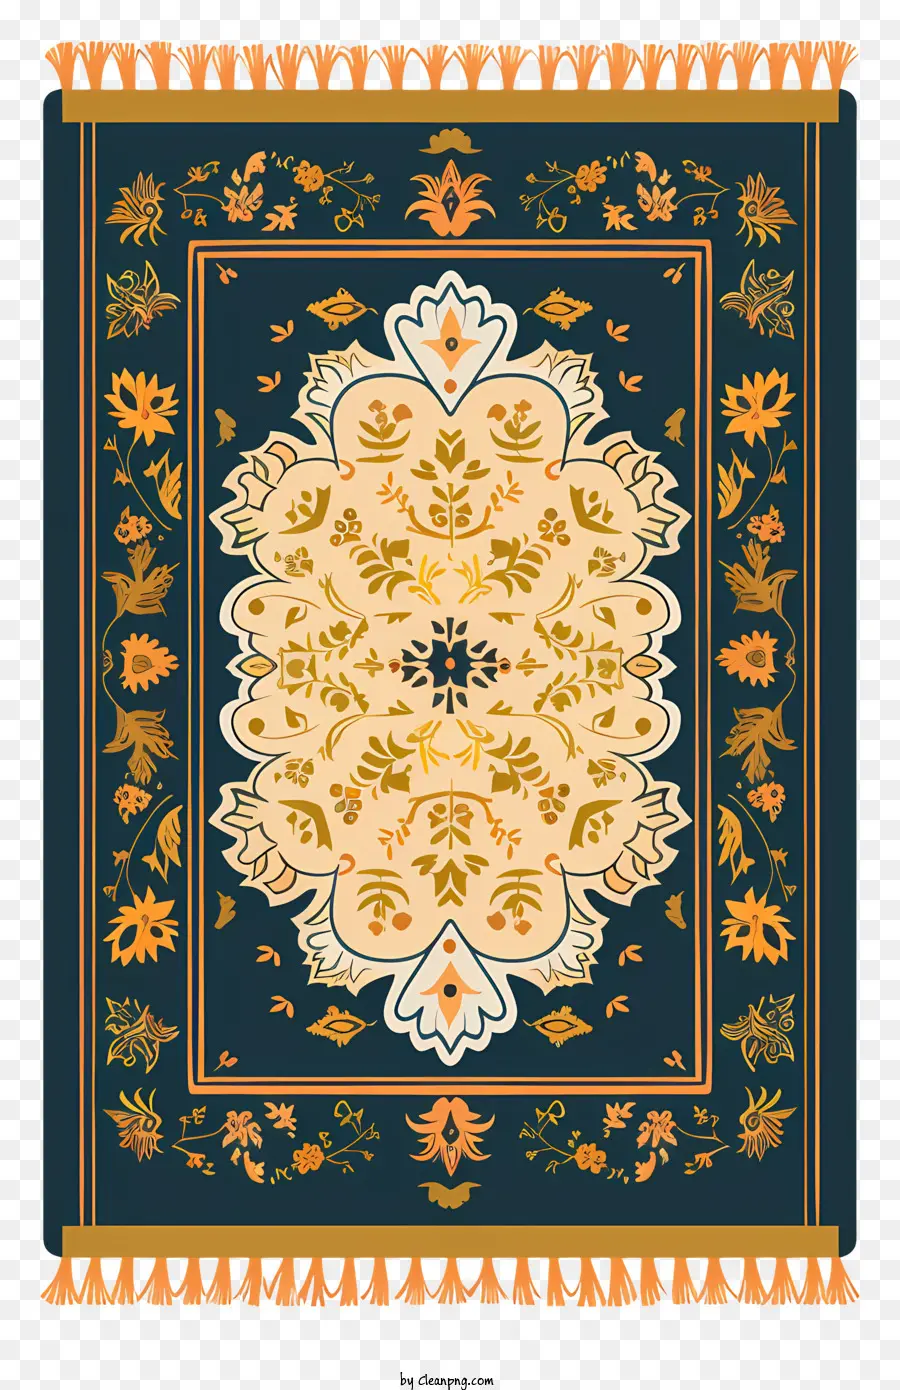 prayer rug decorative carpet golden medallion floral patterns blue background